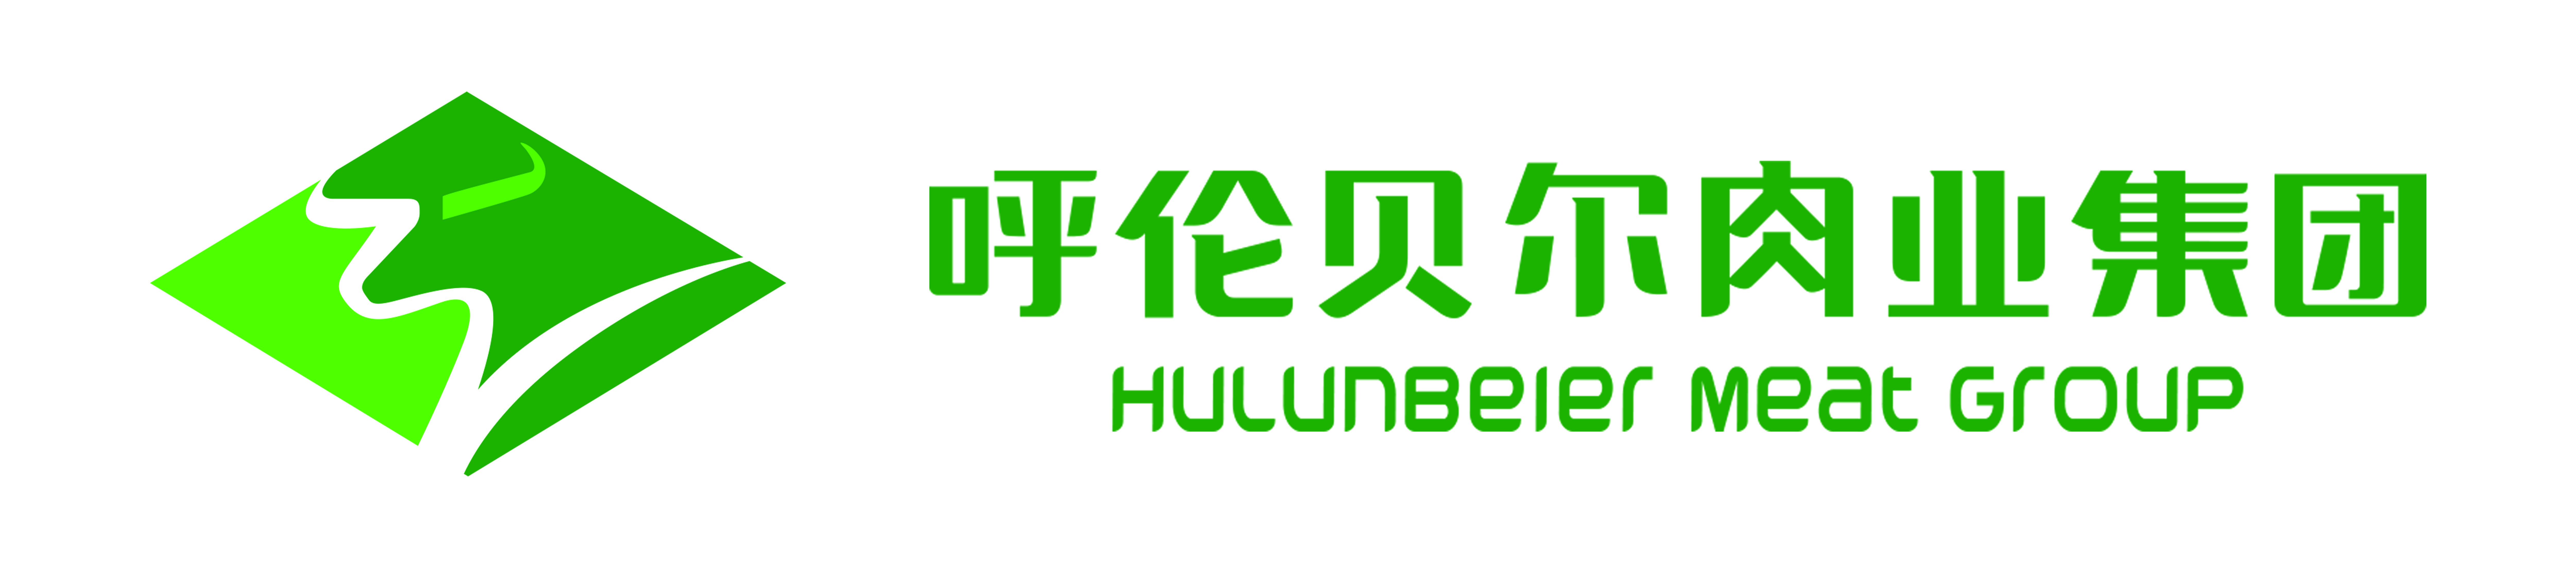 呼伦贝尔肉业集团logo.jpg